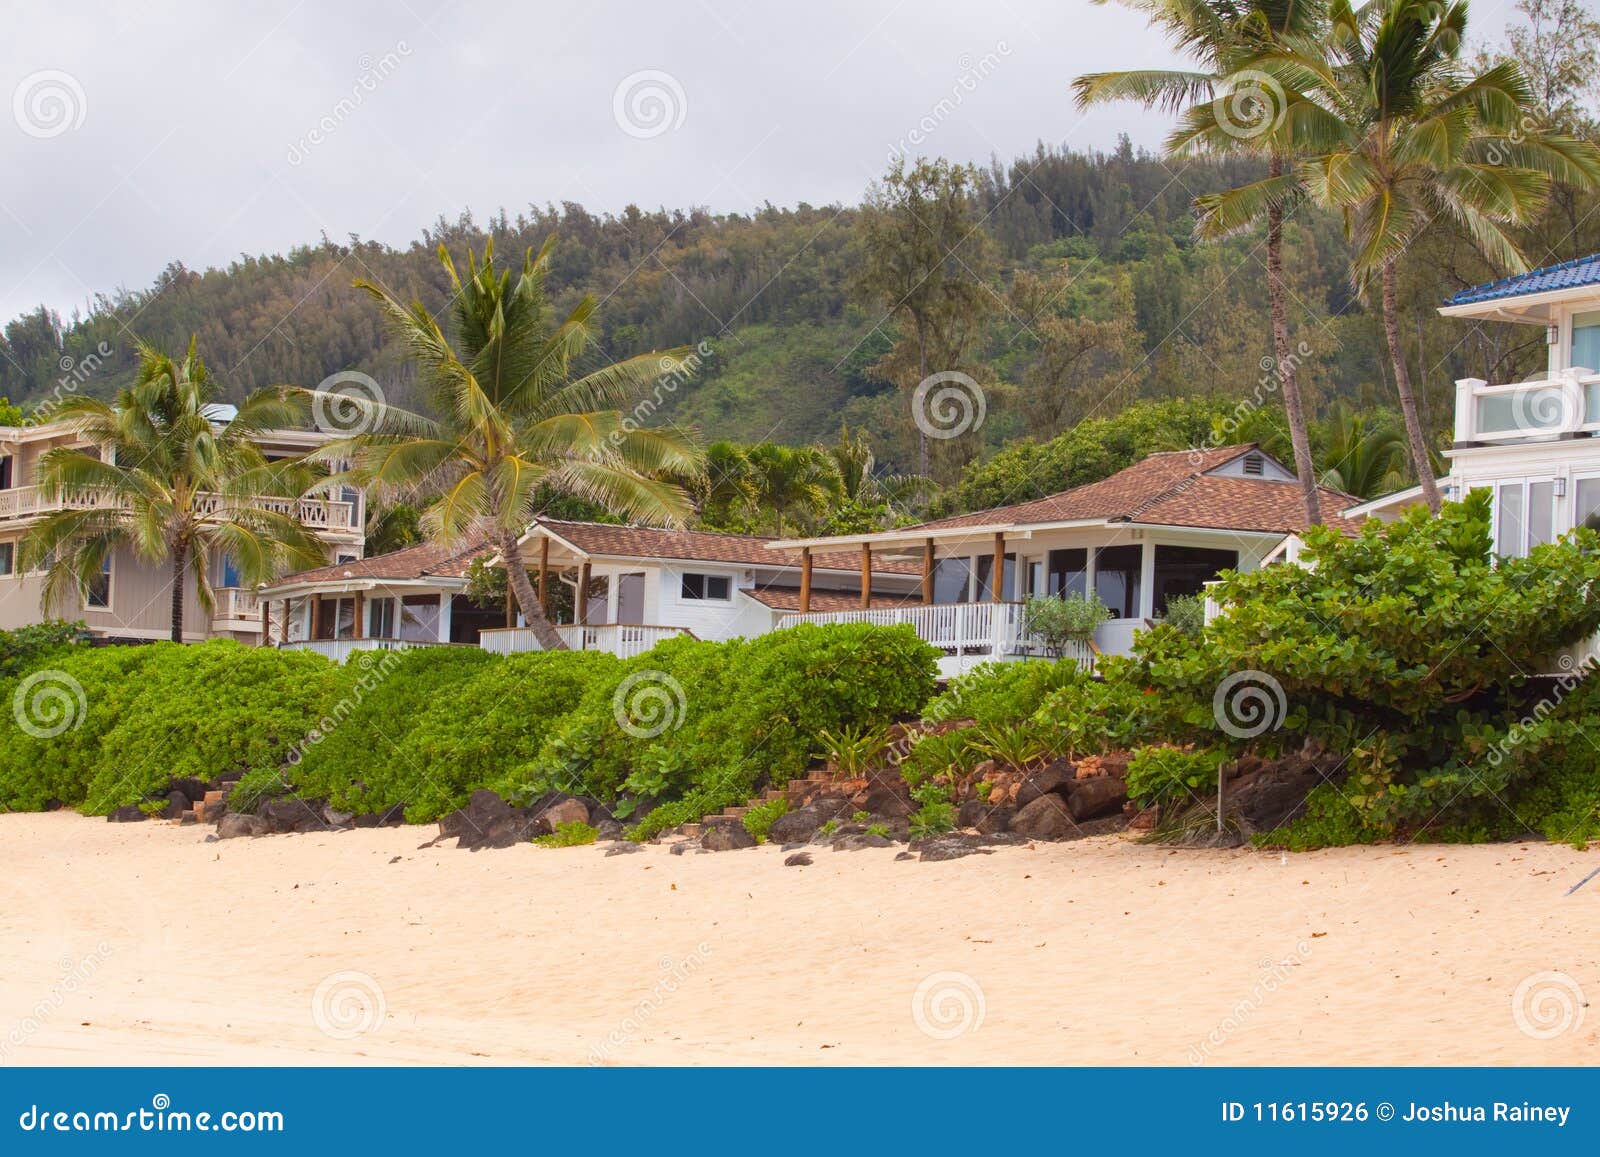 hawaiian house rentals